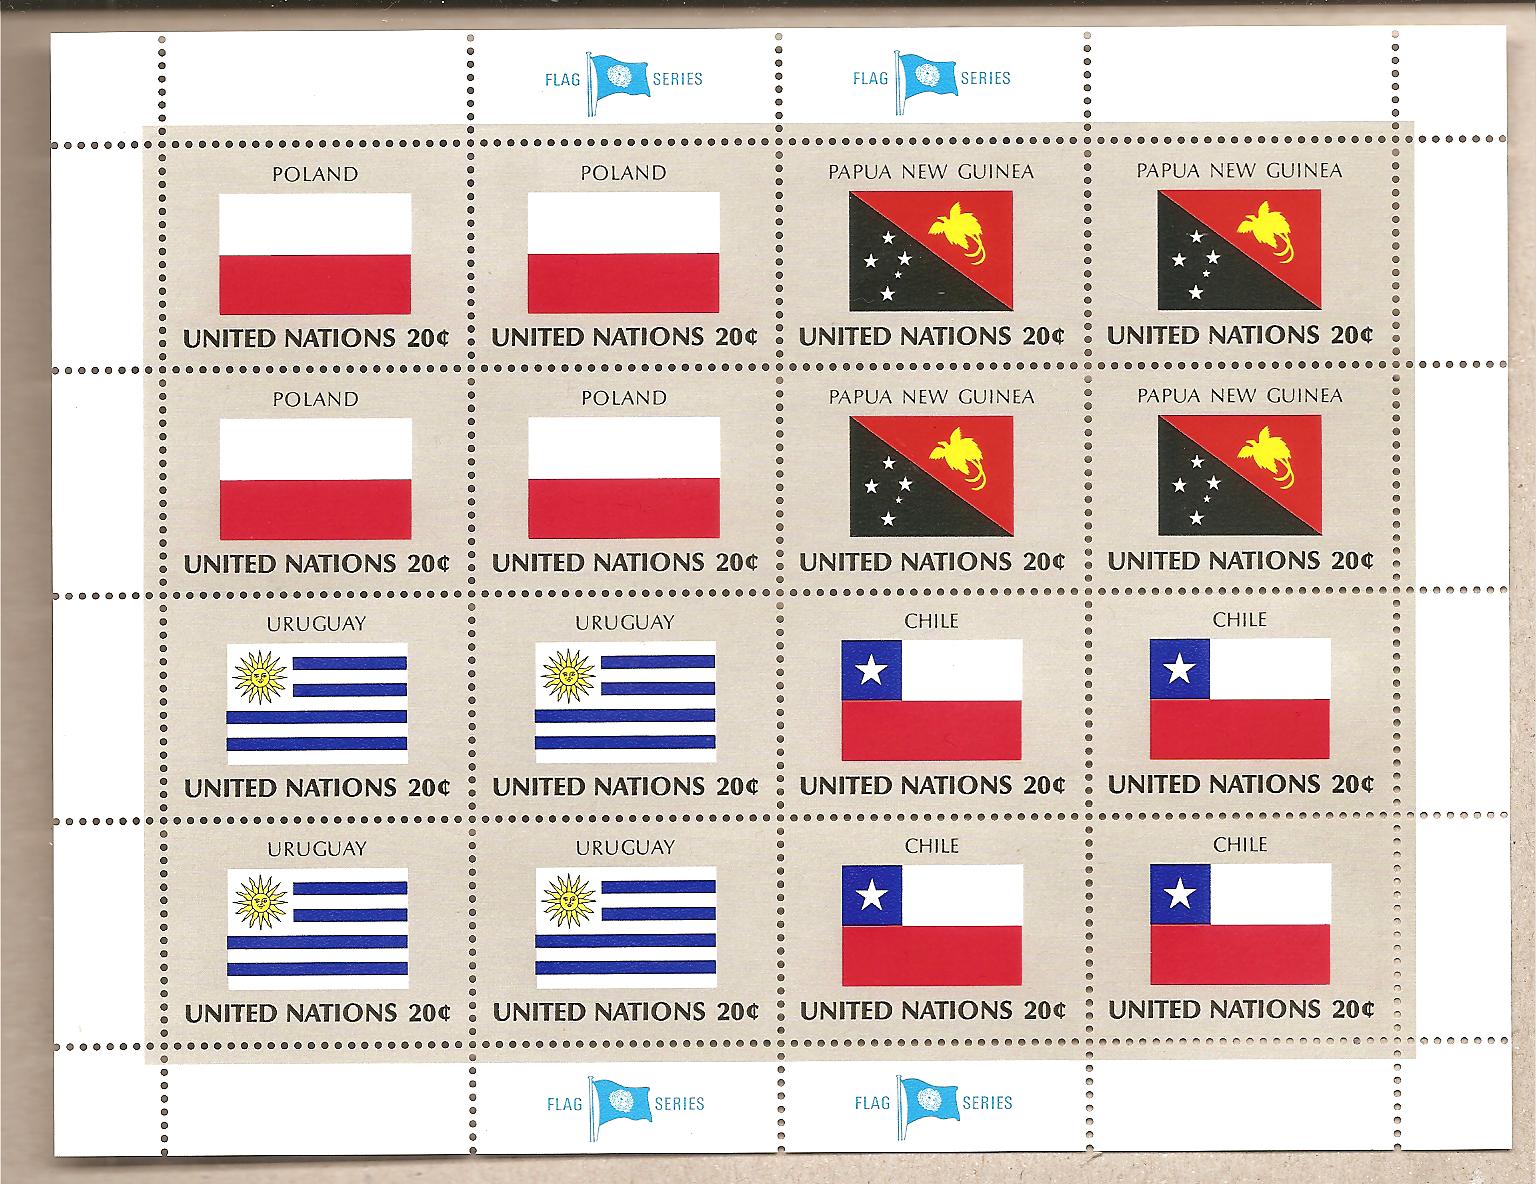 41298 - ONU New York - foglietto nuovo serie bandiere: Polonia, Papua Nuova Guinea, Uruguay, Cile